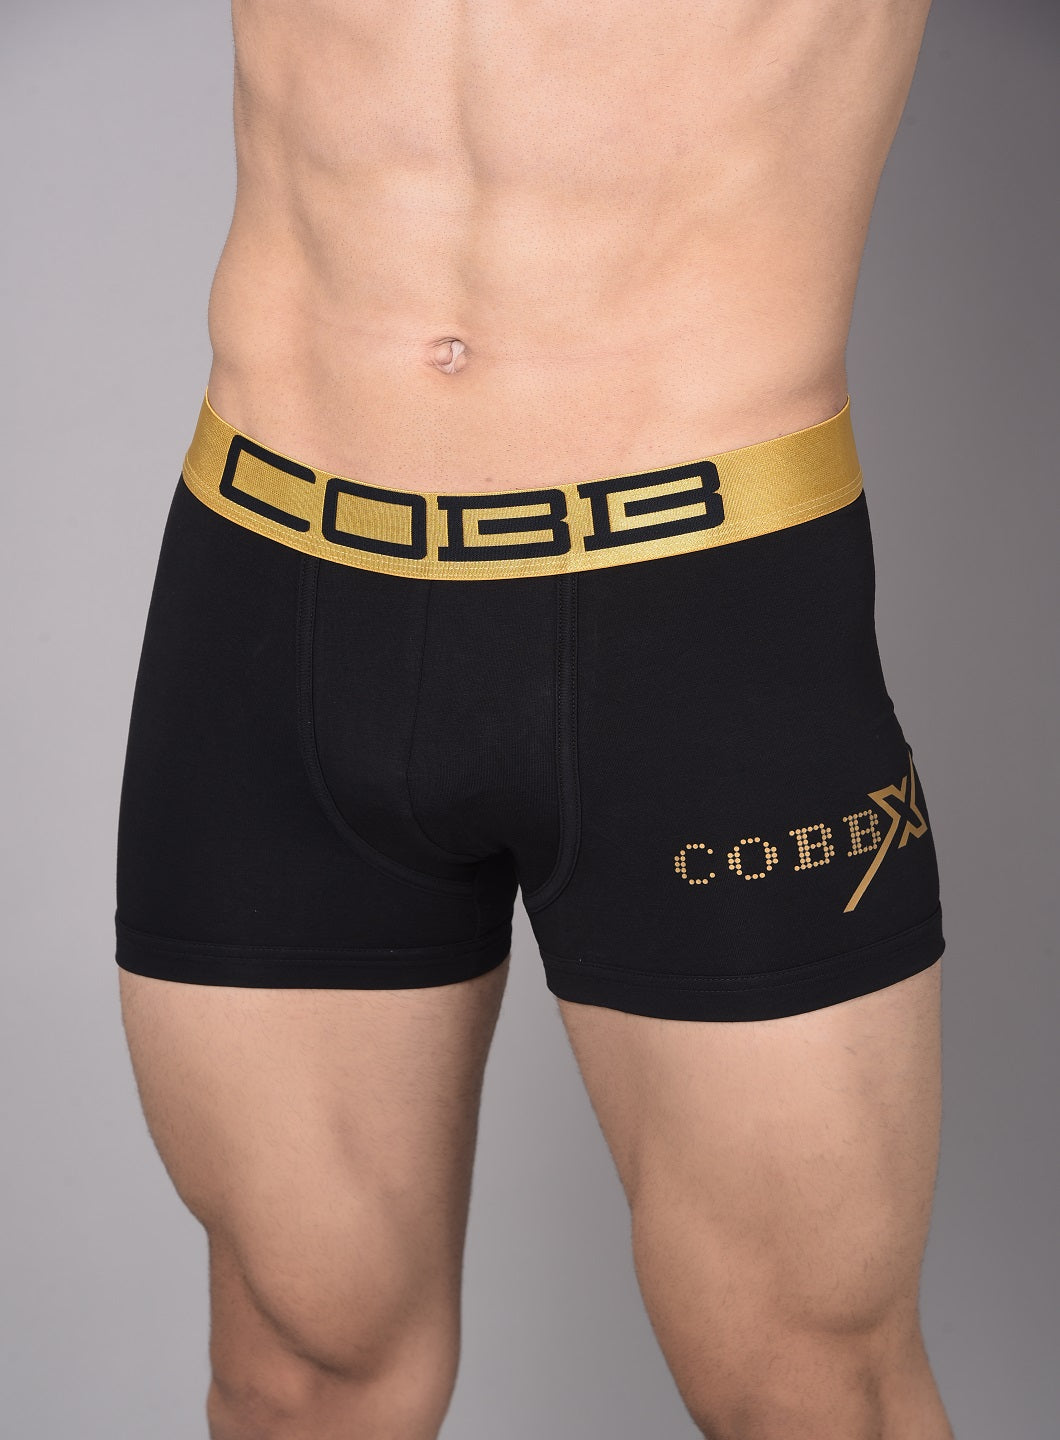 Cobb Mens Black Solid Premium Trunk